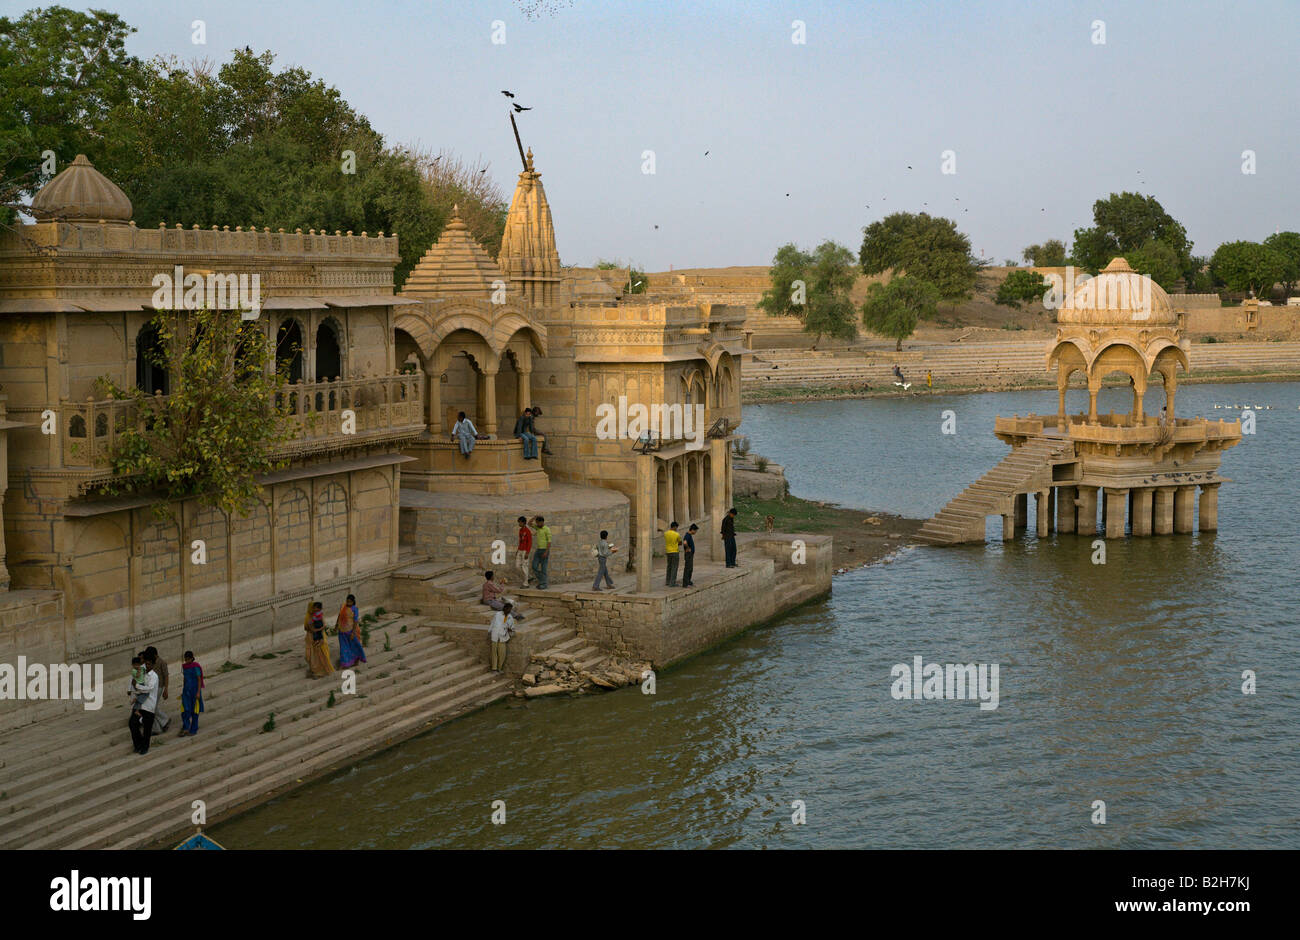 Sandstein-Tempel am Ufer des GADI SAGAR einen kleinen See in der goldenen Stadt JAISALMER RAJASTHAN Indien Stockfoto